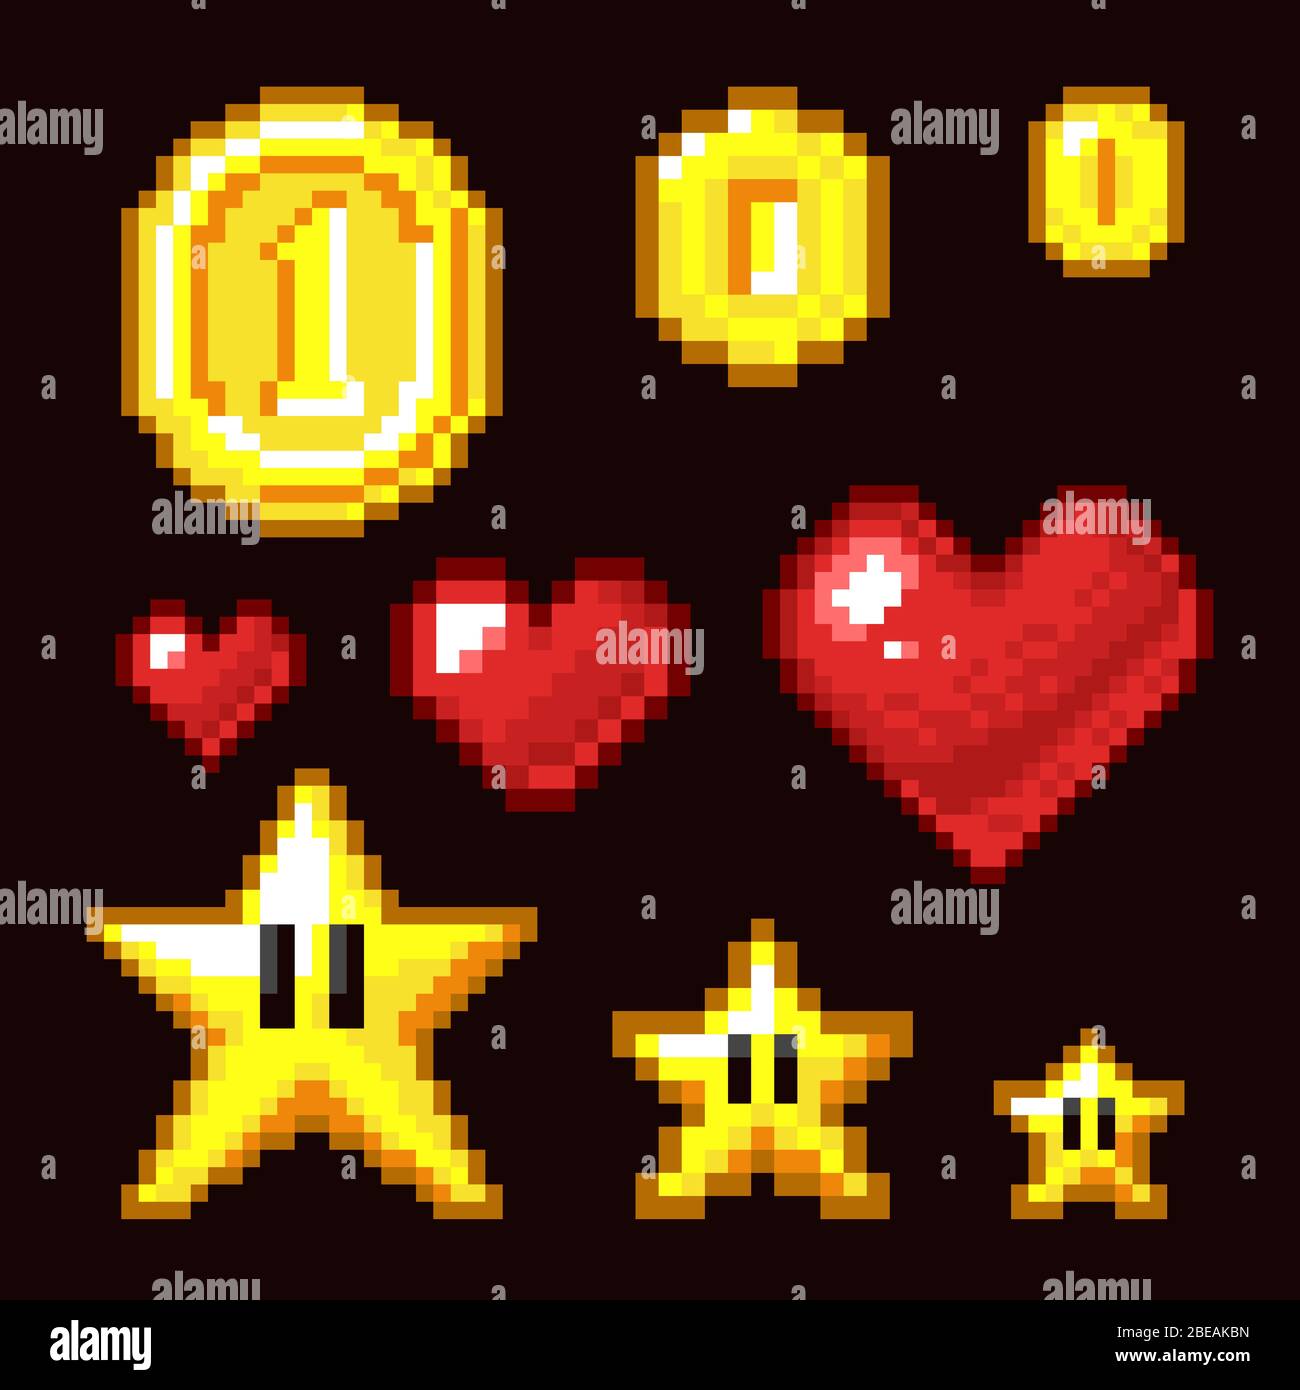 Videospiel 8-Bit-Assets isoliert. Münze, Stern und Herz Pixel Retro-Icons in verschiedenen Größen. Herz und Stern, Münze Pixel Spiel Illustration Stock Vektor